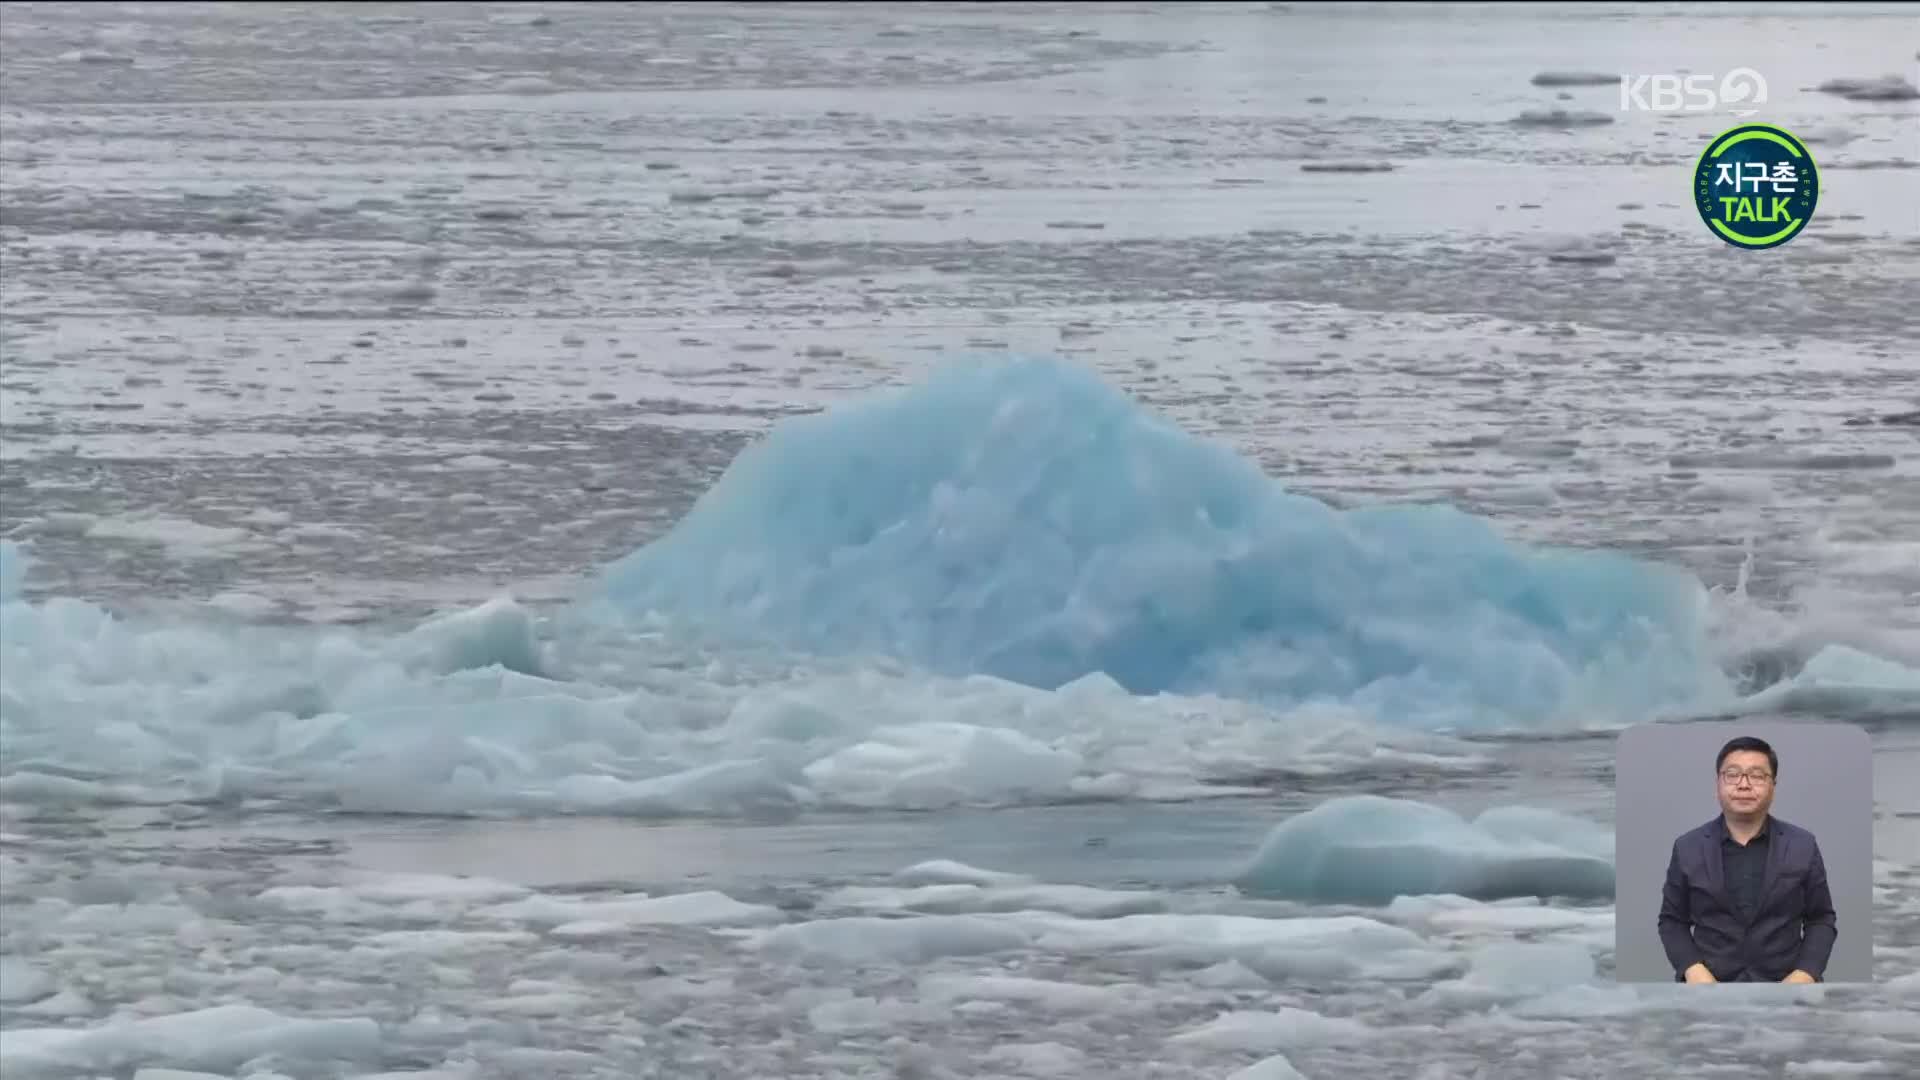 [지구촌 Talk] “서남극 파인섬 빙붕 붕괴로 빙하 유실 가속화”